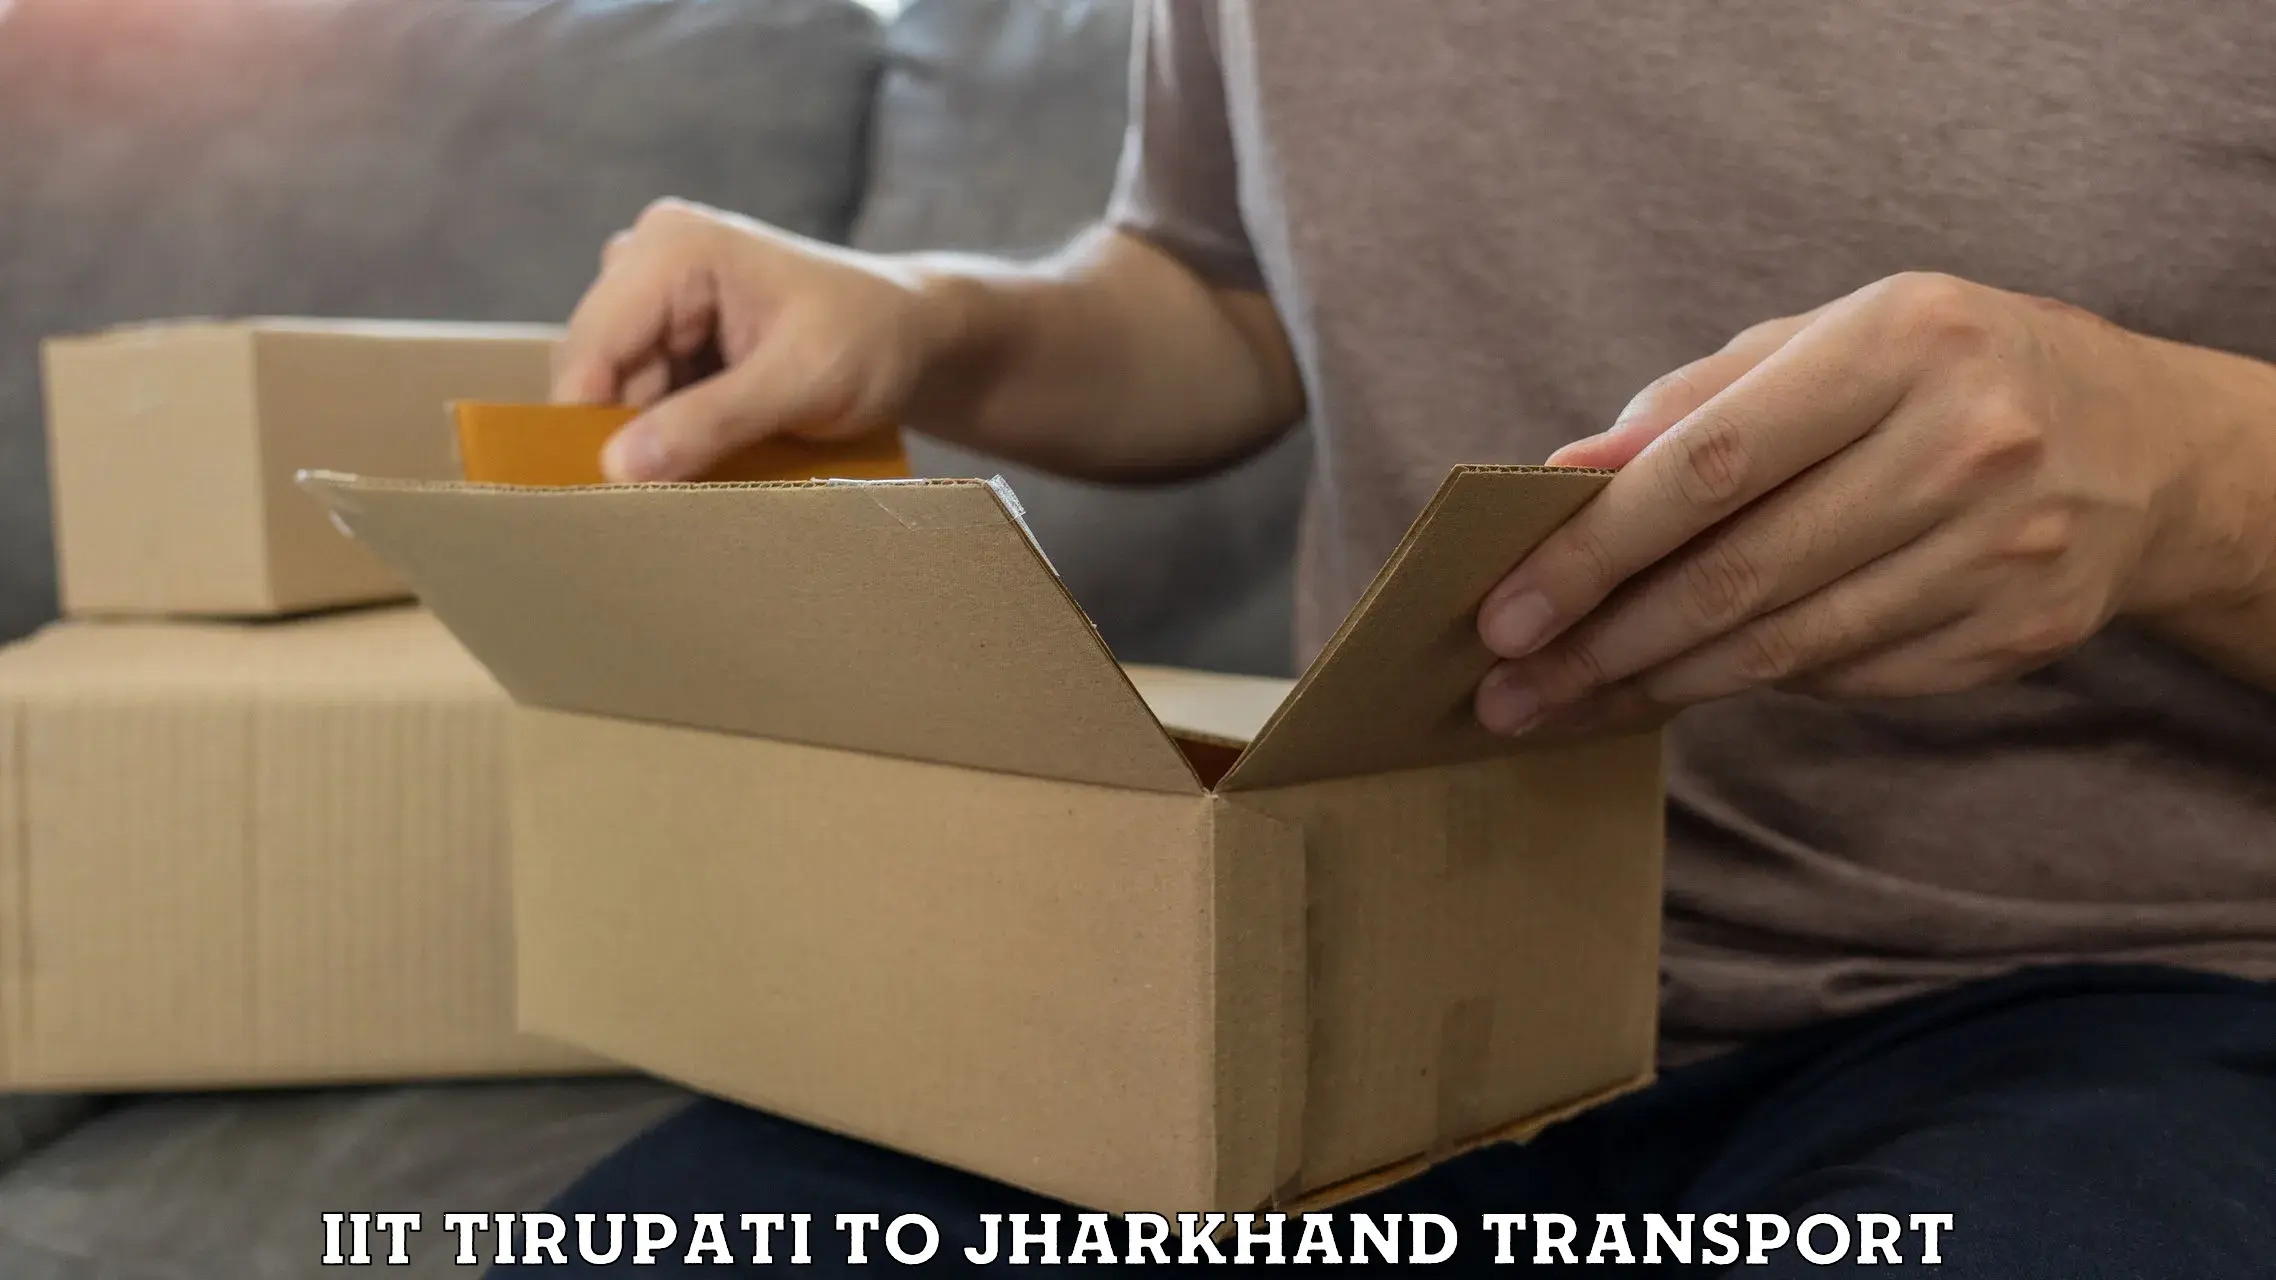 Delivery service IIT Tirupati to Nagar Untari